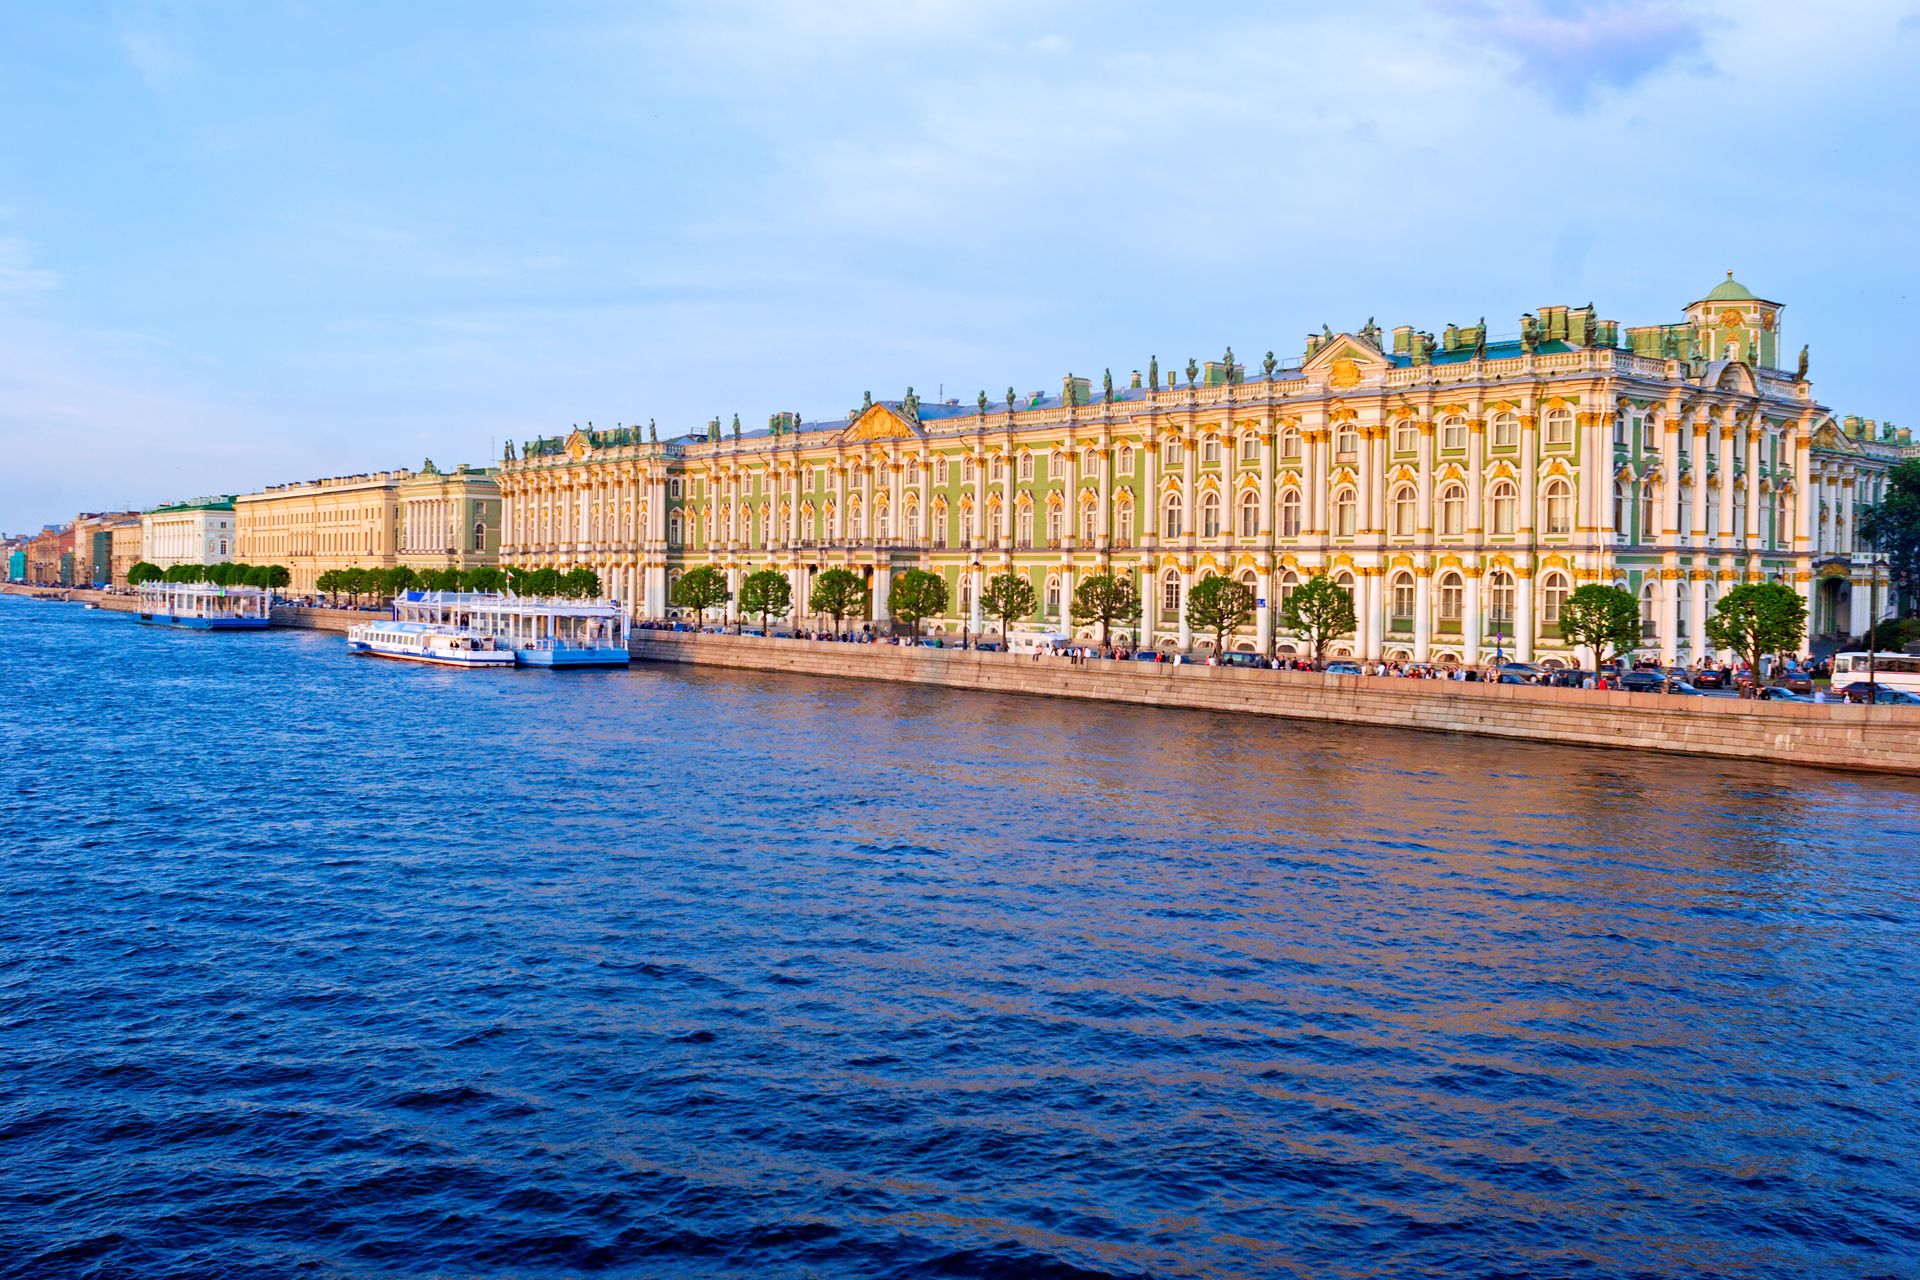 Musée de l'Ermitage et la Neva, Saint-Pétersbourg - Russie ©iStock